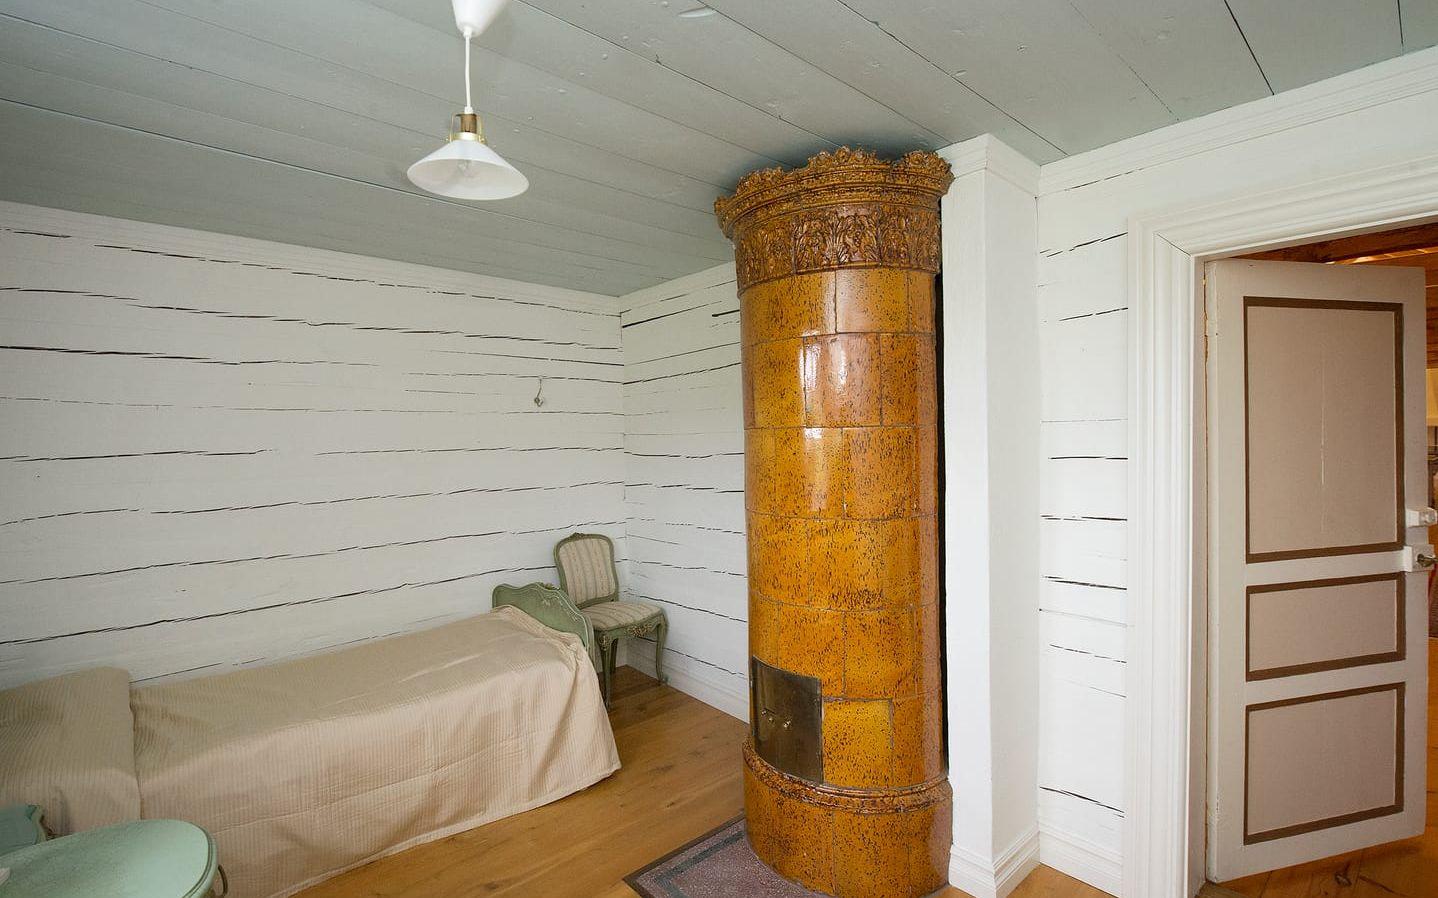 Ett av de små rummen på vinden. Här syns en av de gamla kakelugnarna som finns kvar i huset. Bild: Ola Folkesson